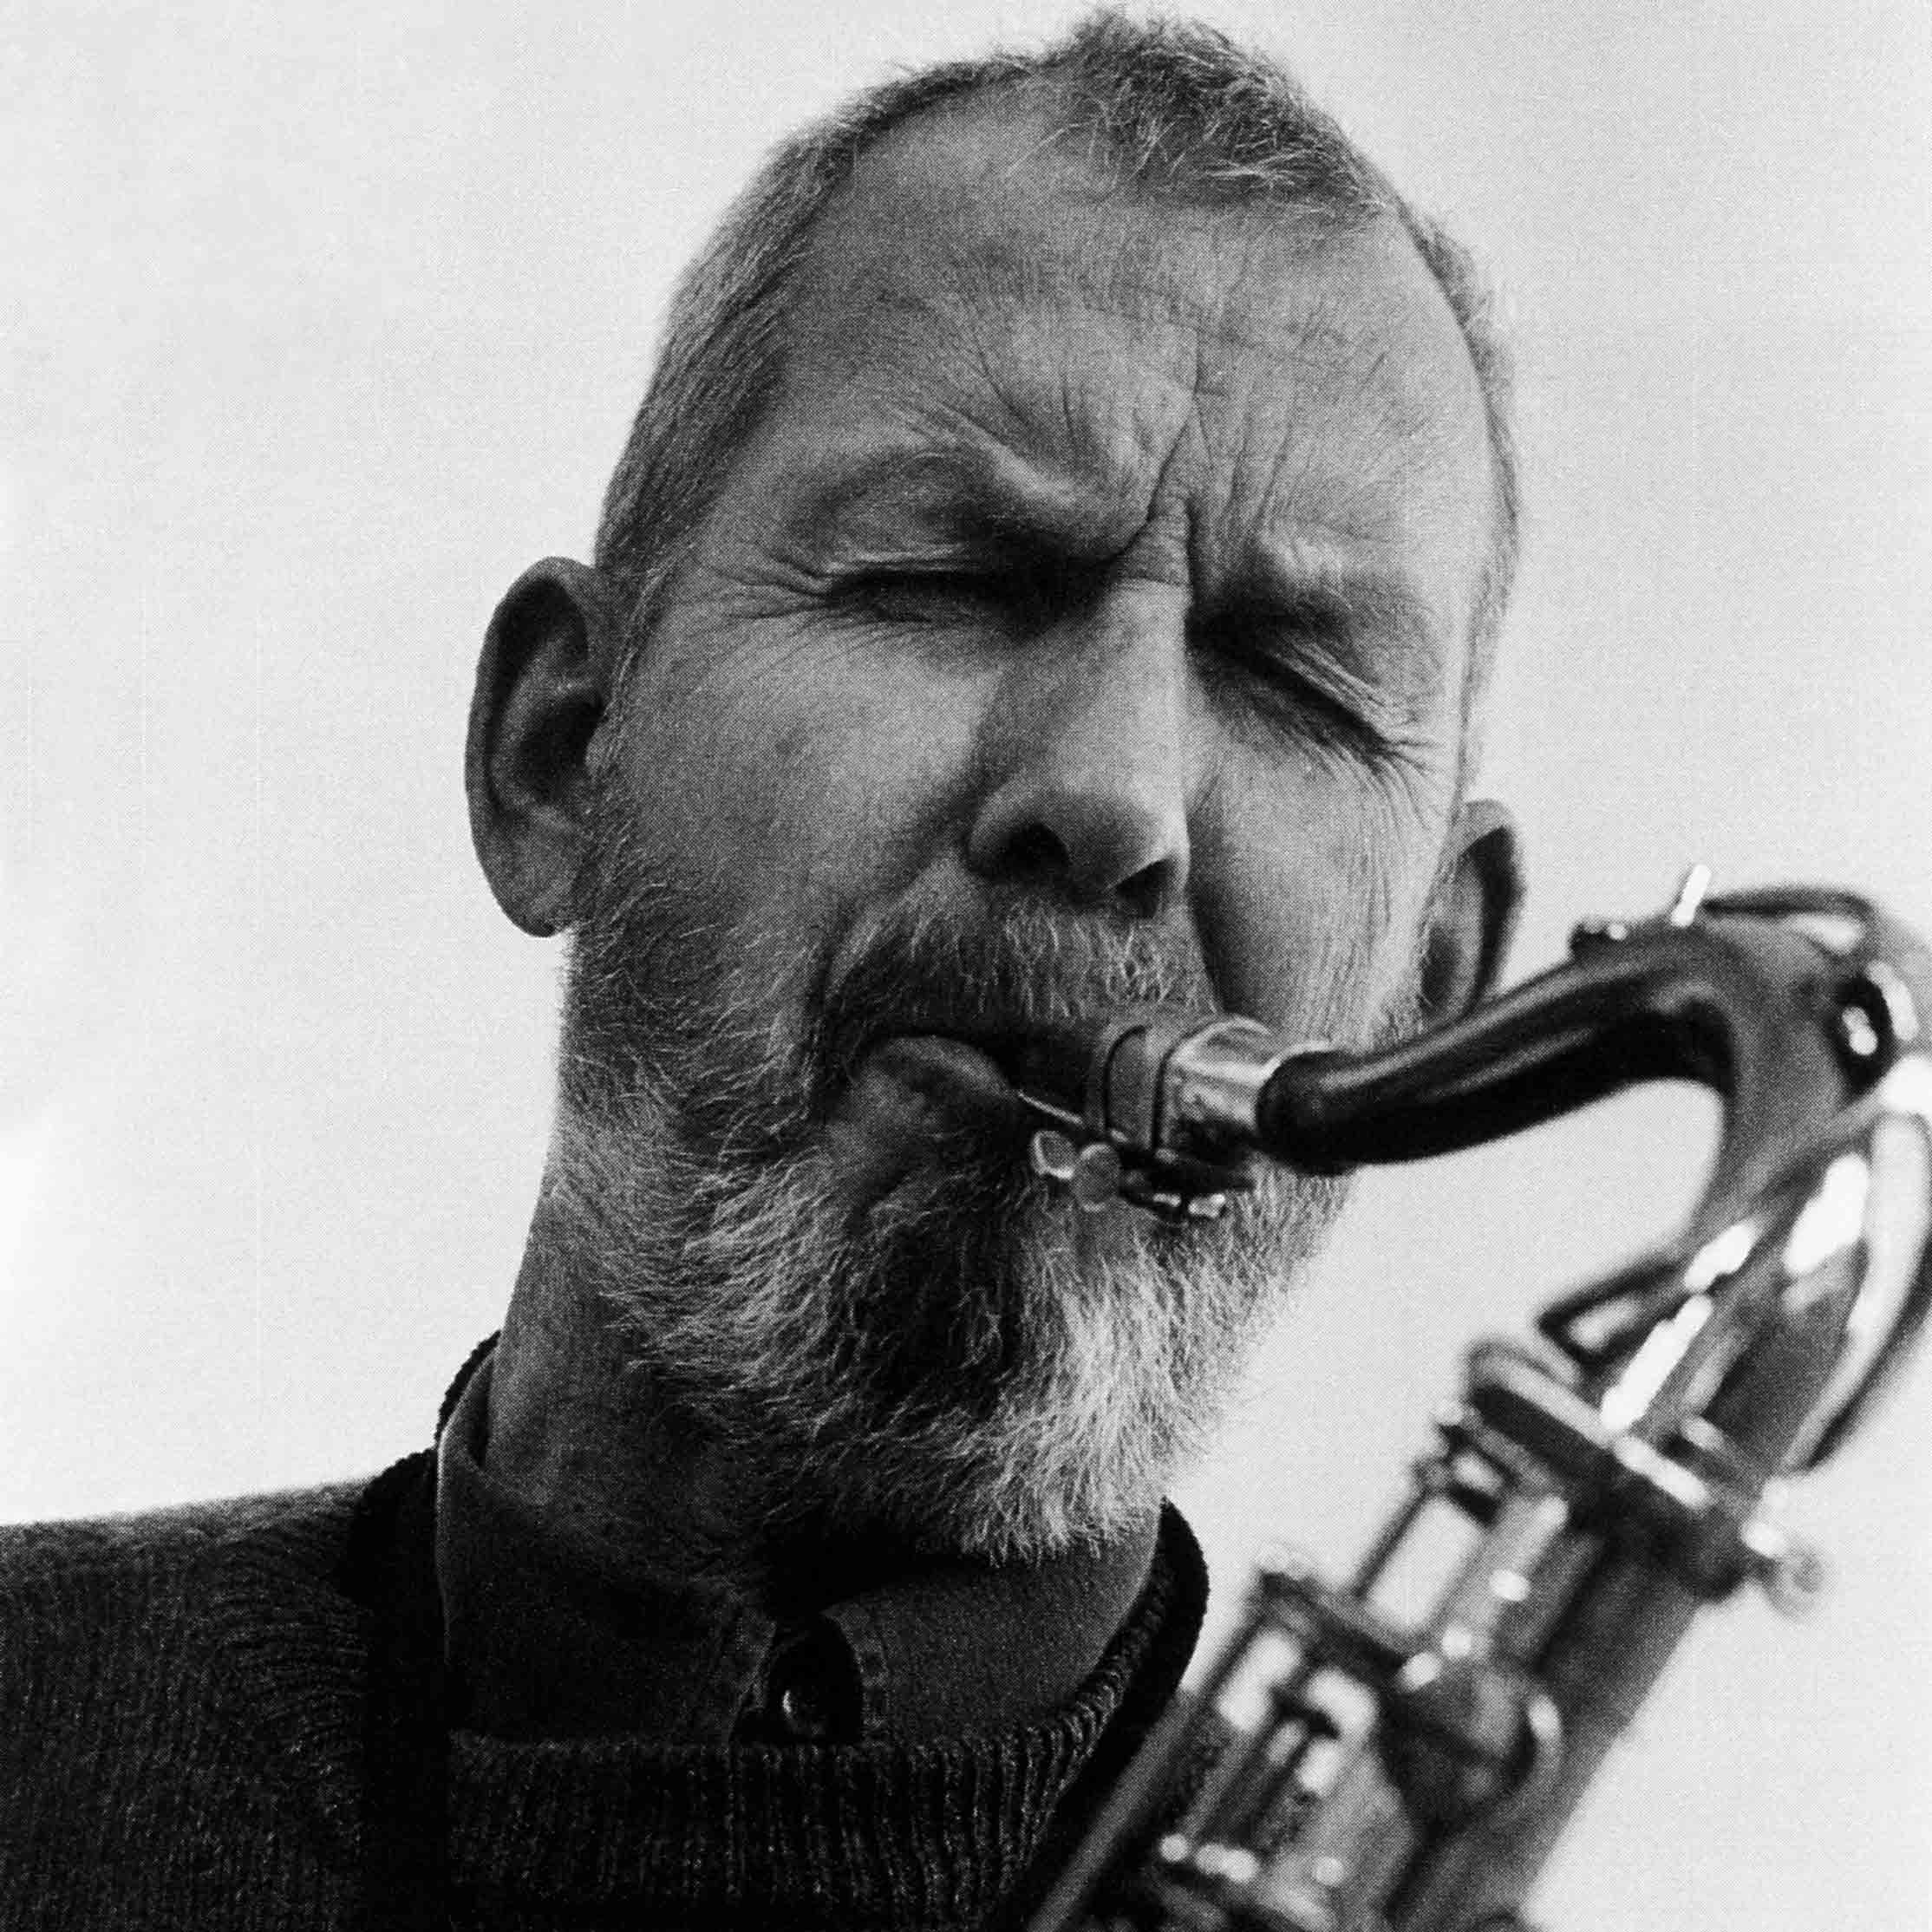 Gunnar Cyrén, porträttsfoto med saxofonen, 90-tal, foto: Rolf Salomonsson